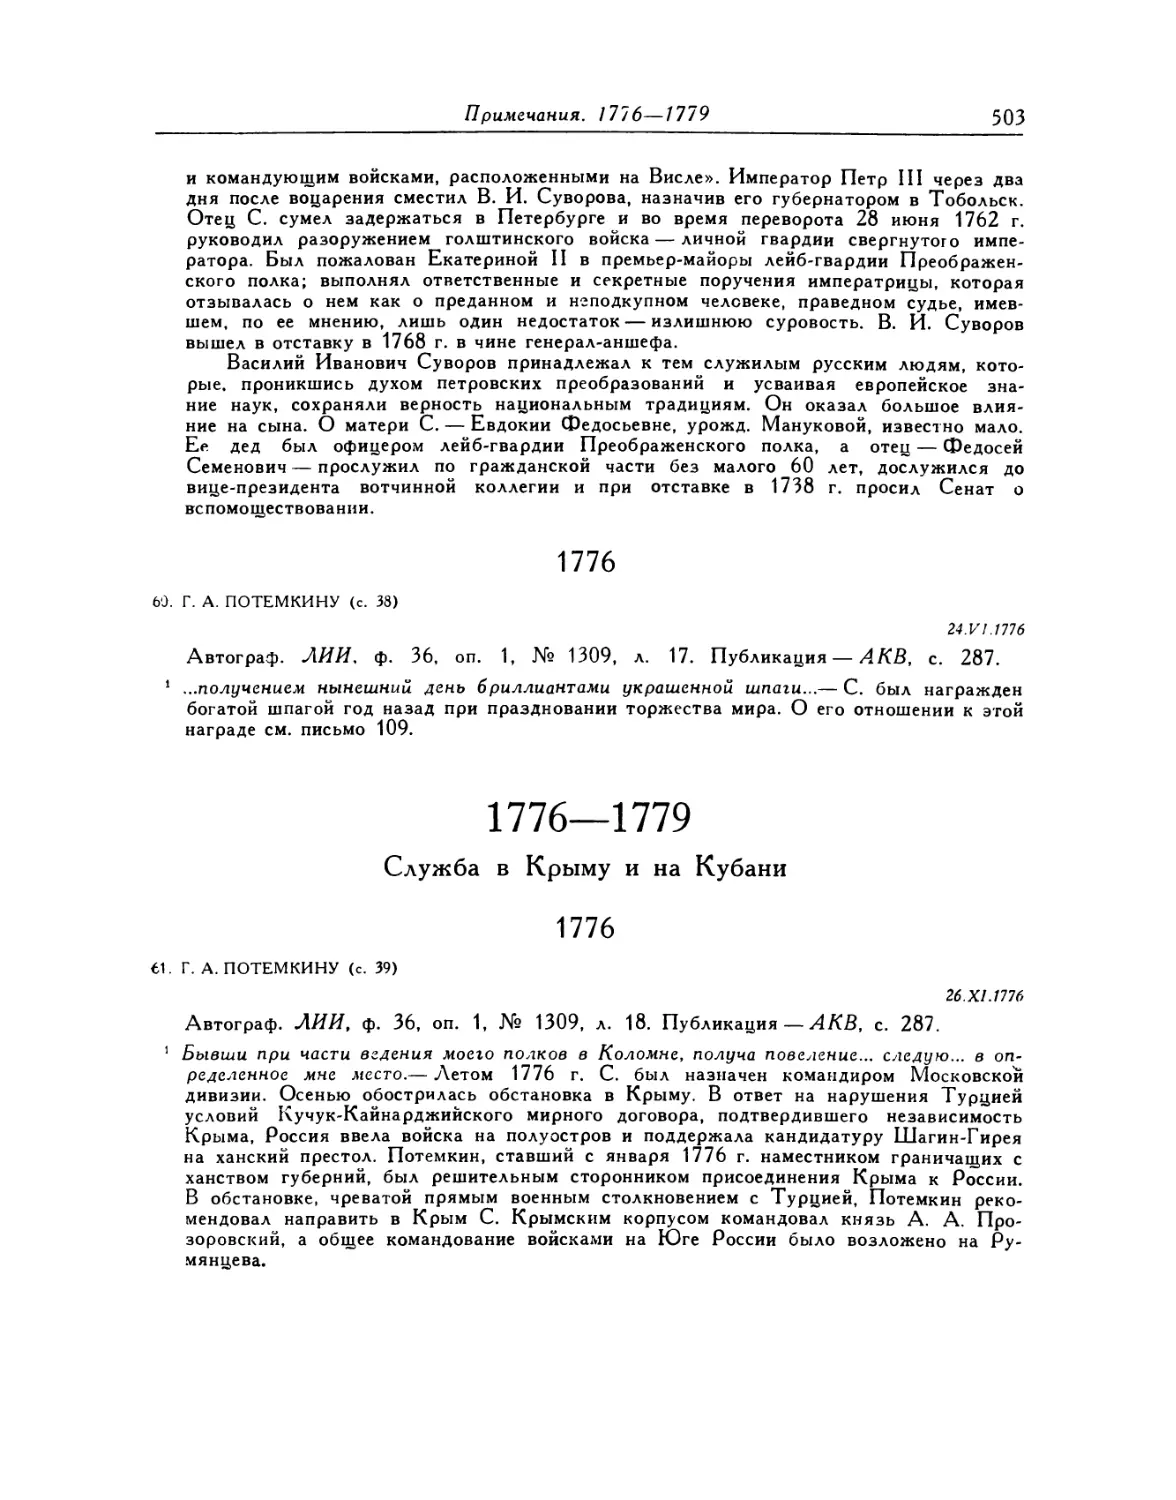 1776—1779. Служба в Крыму и на Кубани